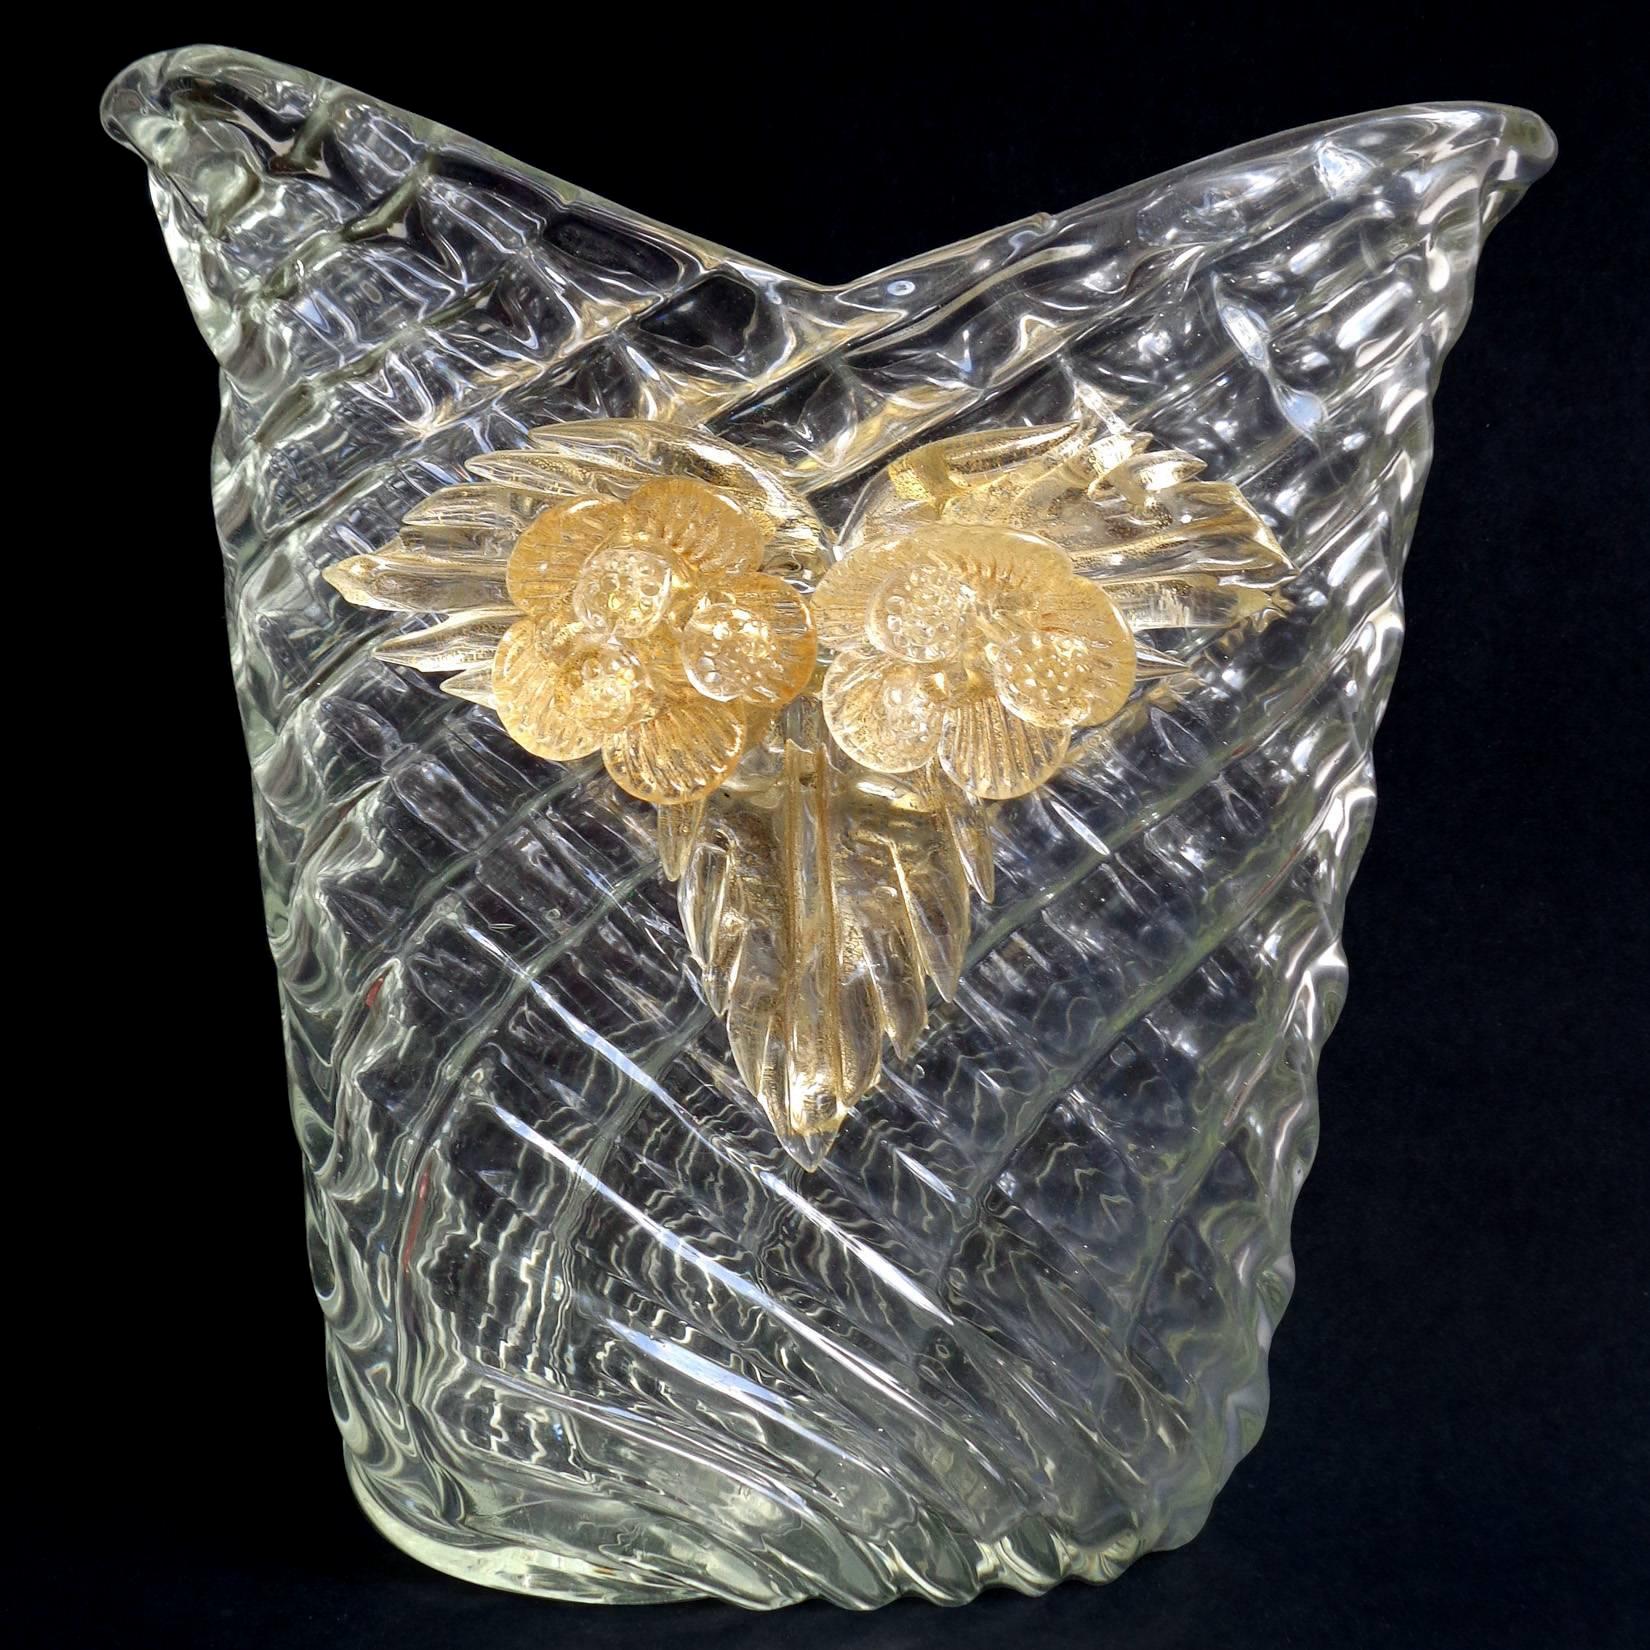 Precioso jarrón grande de cristal de Murano transparente con flores y hojas doradas de vidrio artístico italiano acolchado. Documentado al diseñador Flavio Poli para Seguso Vetri d'Arte, hacia 1949, en el diseño 